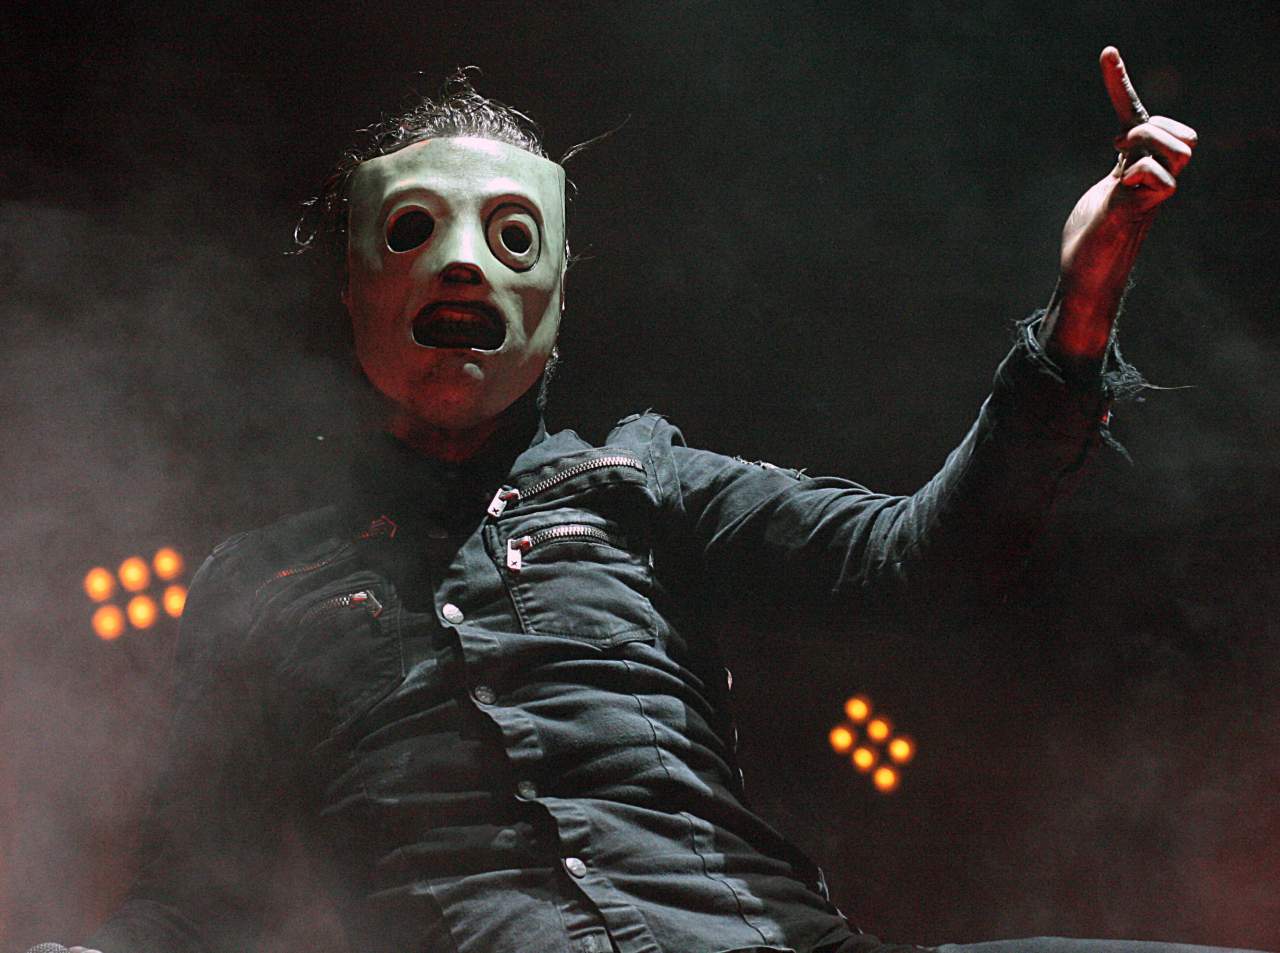 Вокалист группы Slipknot выбил смартфон из рук фаната, который увлекся перепиской